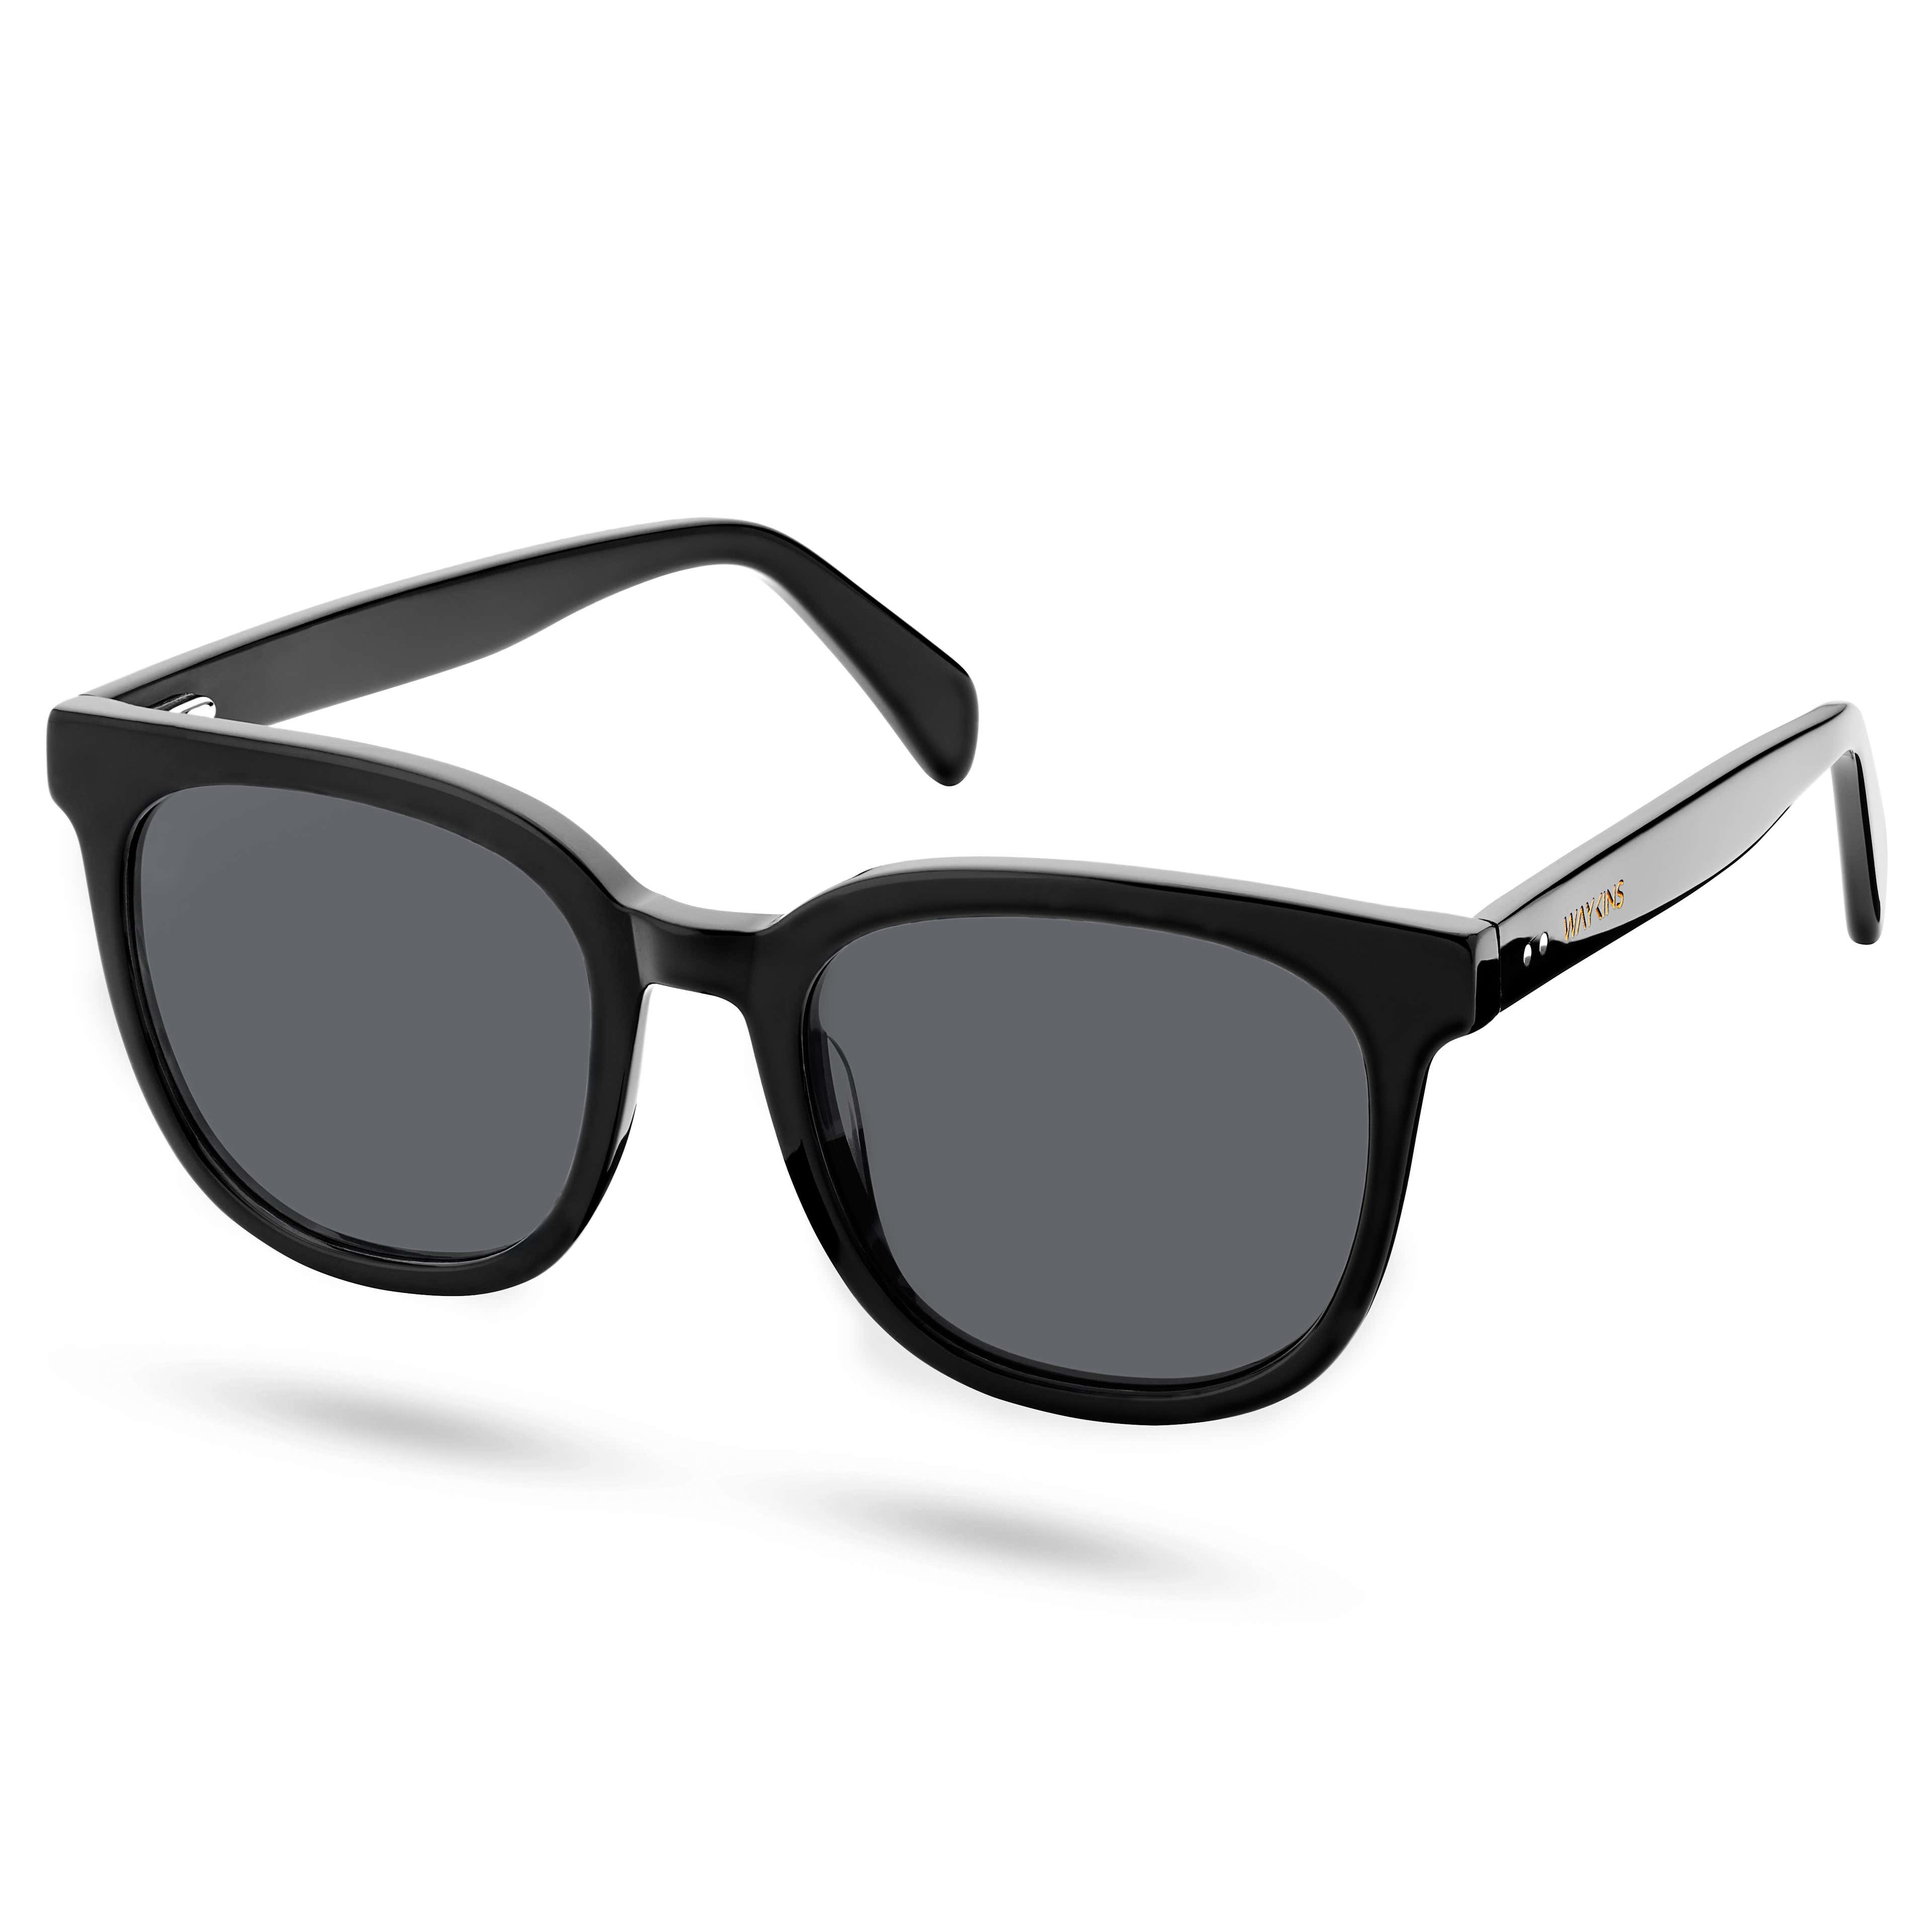 Retro schwarze polarisierte rauchige Sonnenbrille